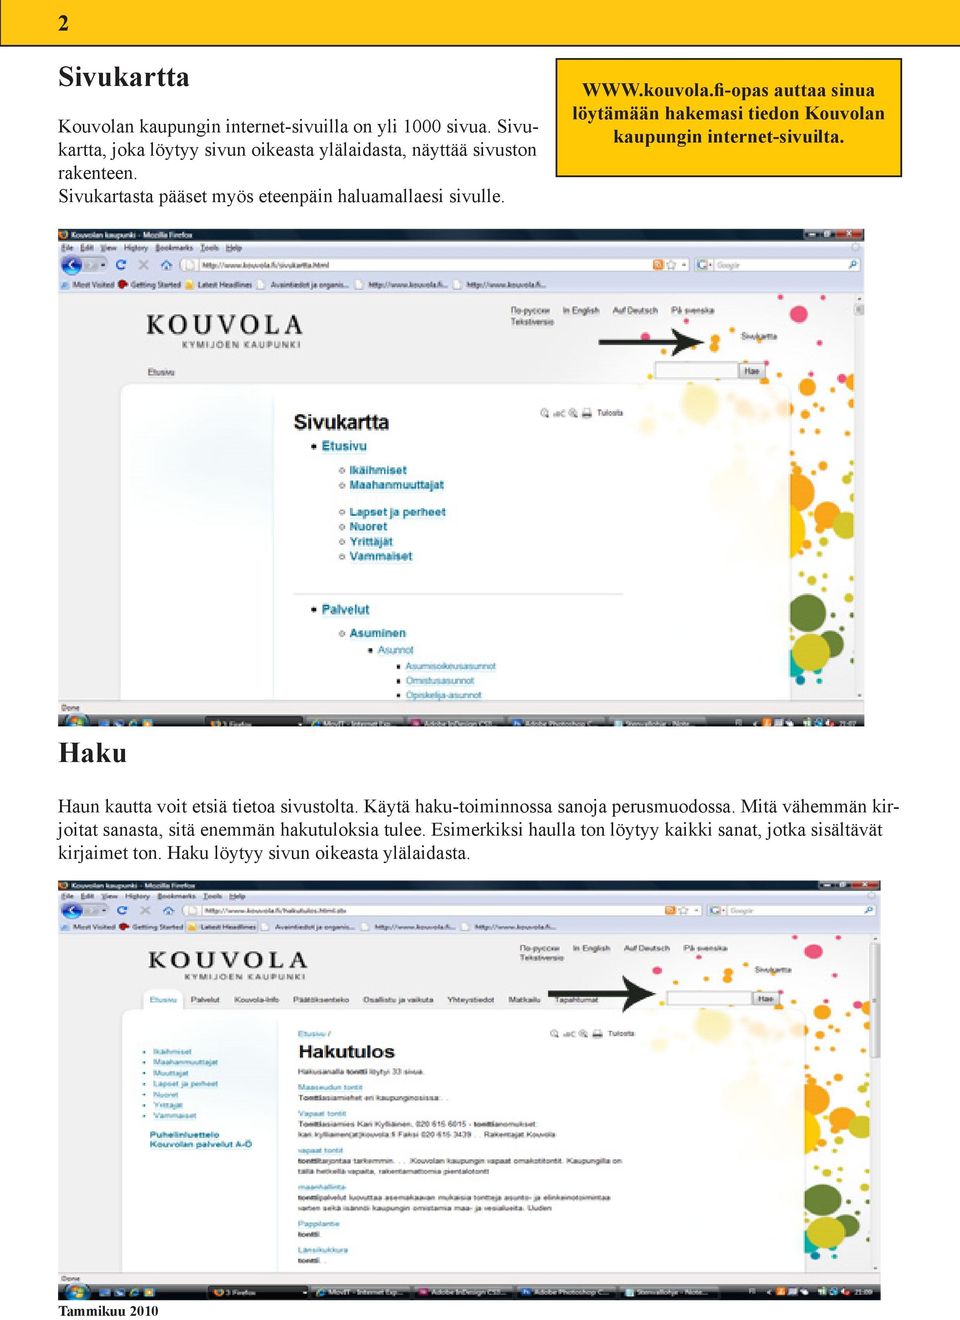 kouvola.fi-opas auttaa sinua löytämään hakemasi tiedon Kouvolan kaupungin internet-sivuilta. Haku Haun kautta voit etsiä tietoa sivustolta.